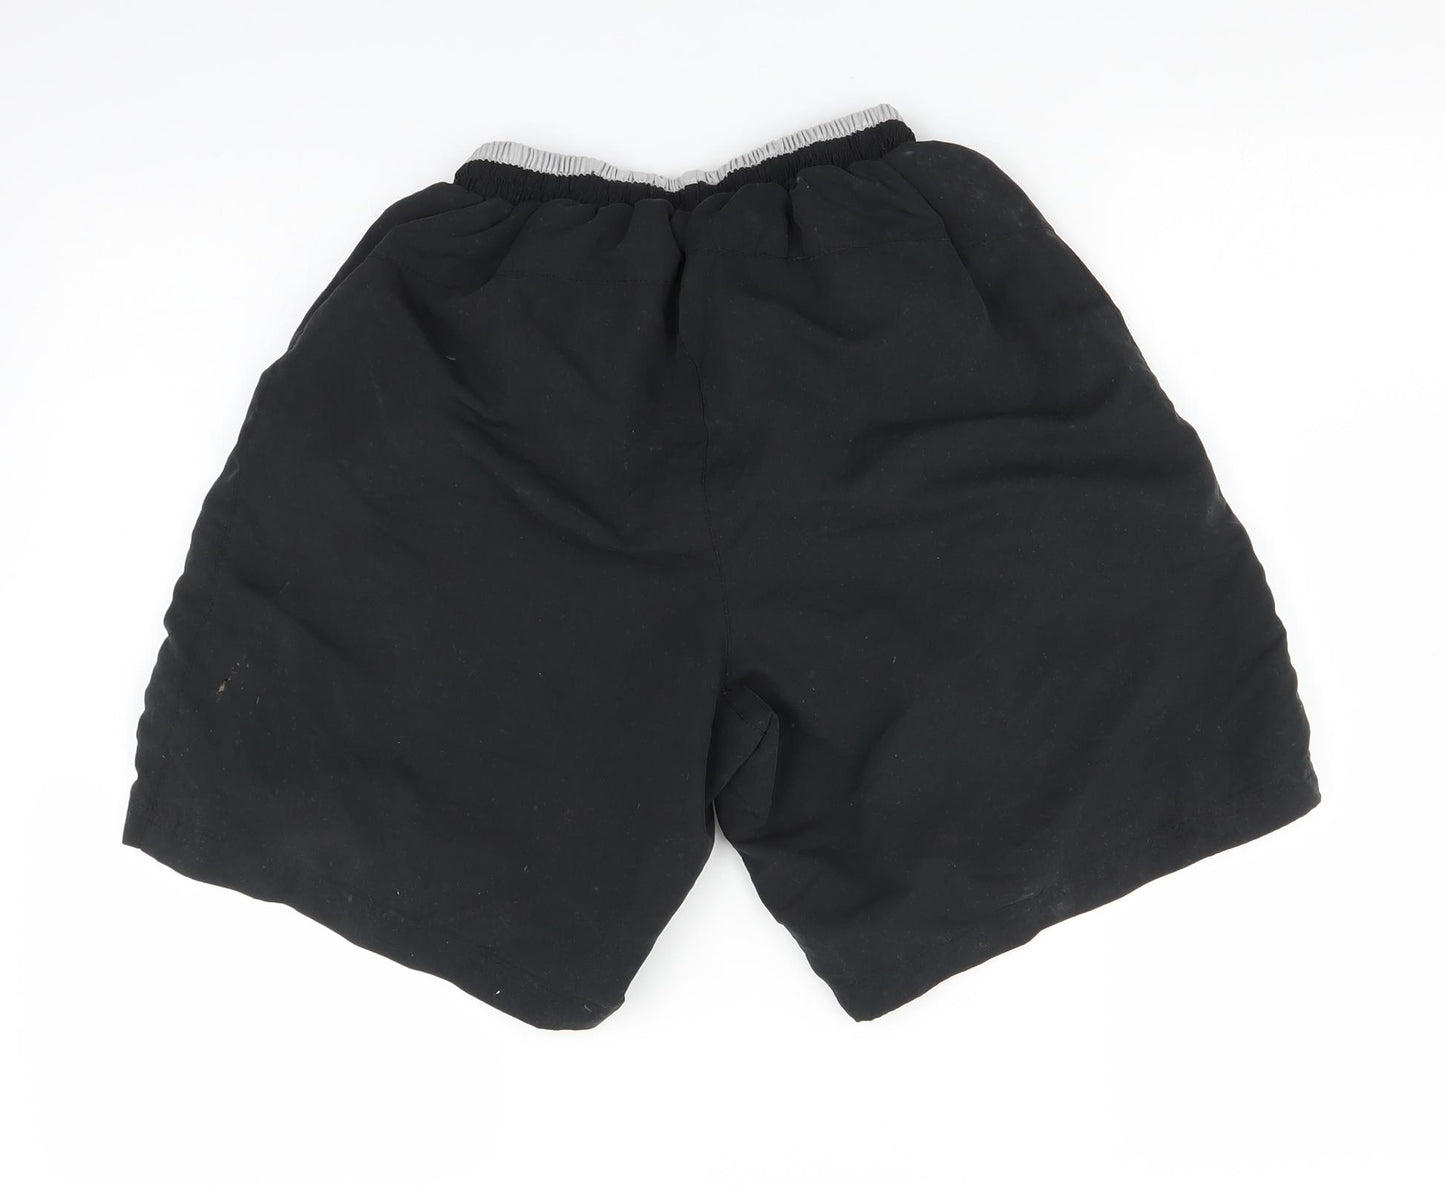 Slazenger Mens Black   Bermuda Shorts Size S